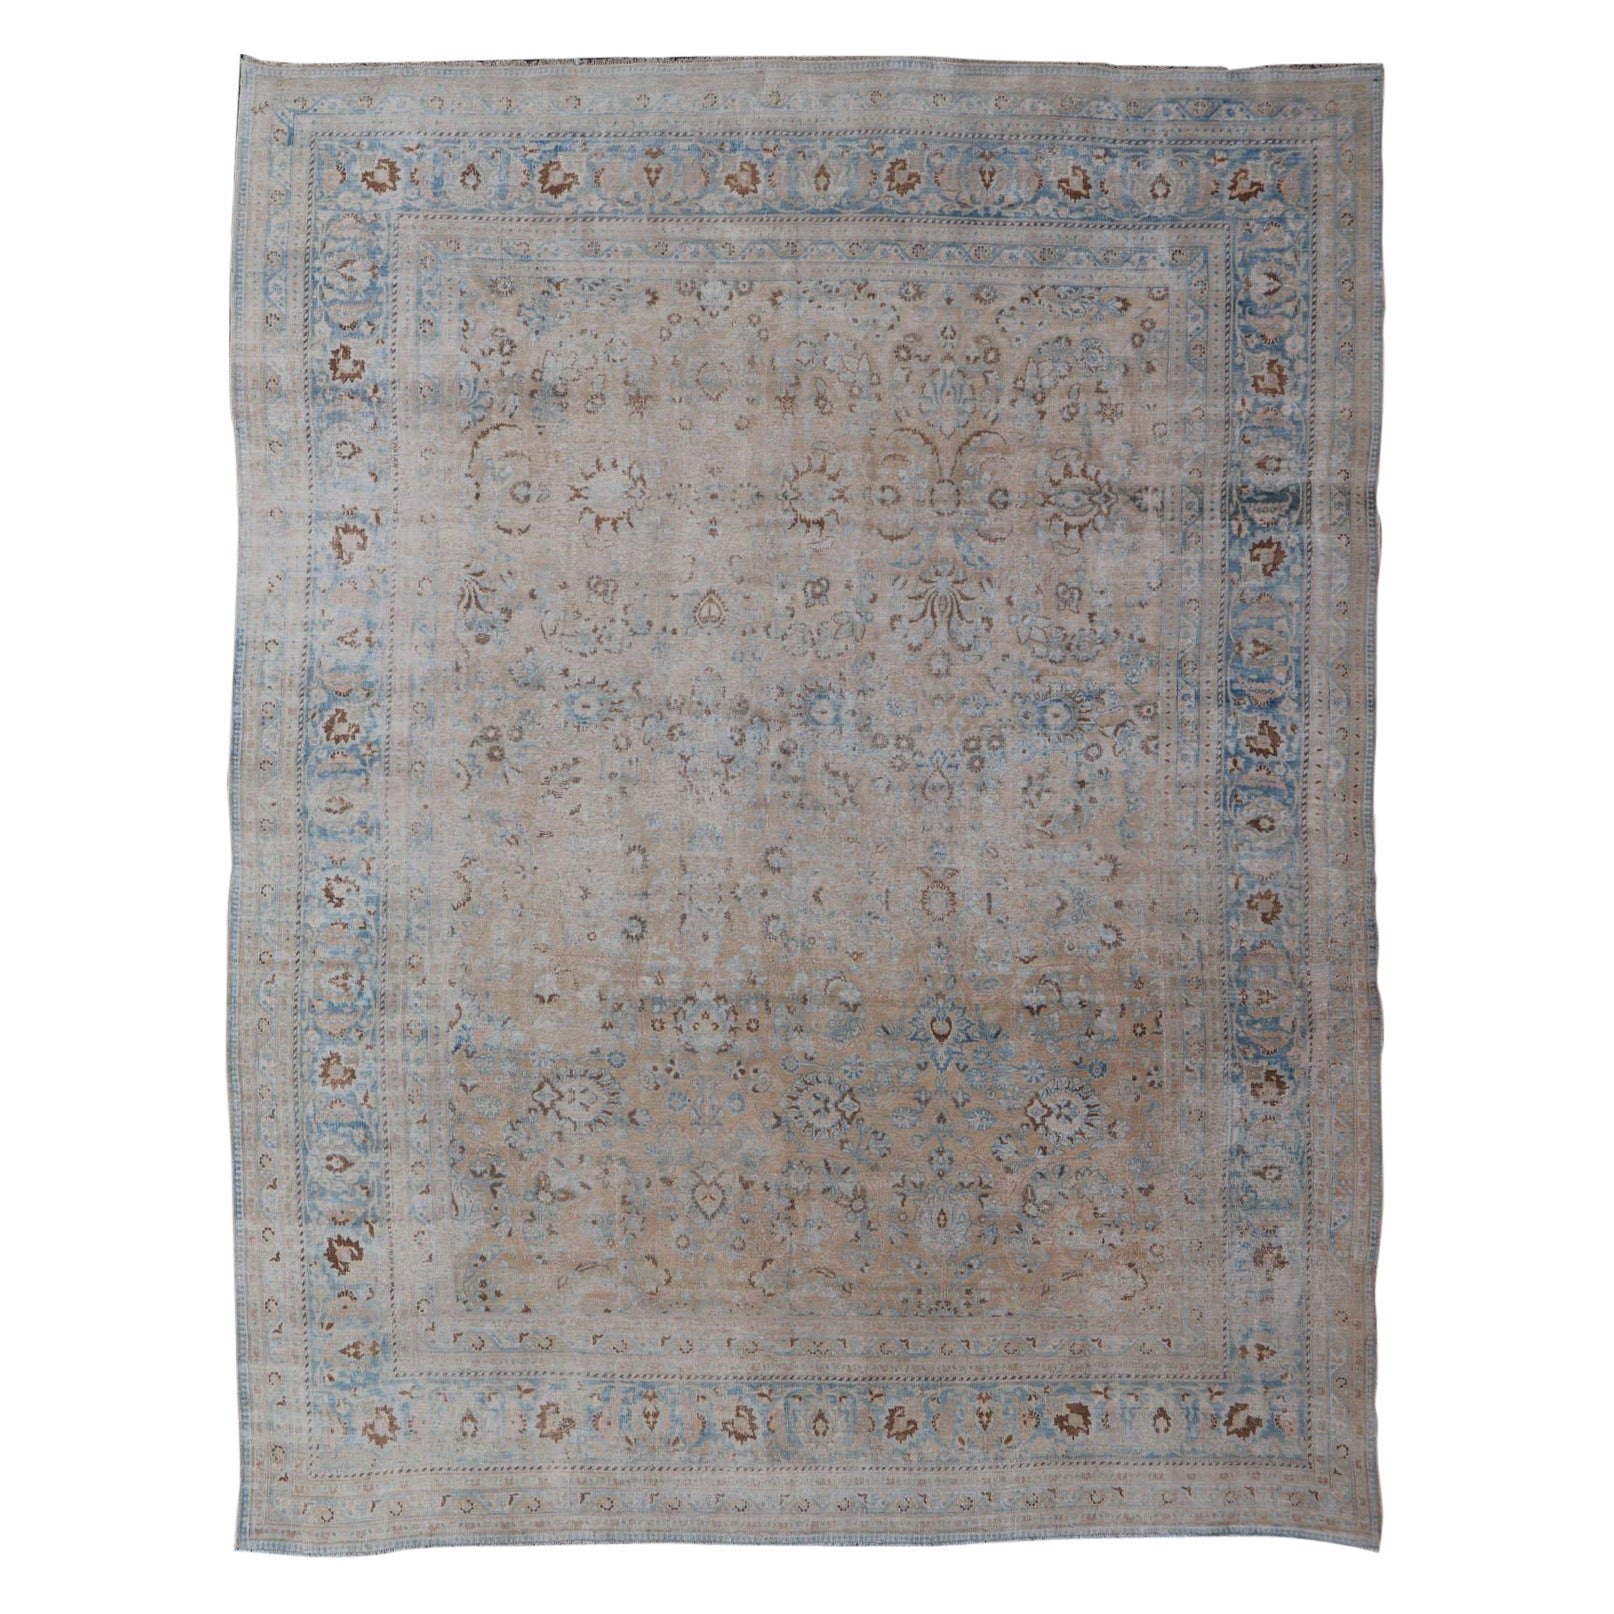 Persischer antiker Mashhad-Teppich im Used-Stil mit gemustertem Blumen- und Medaillondesign, im Used-Stil